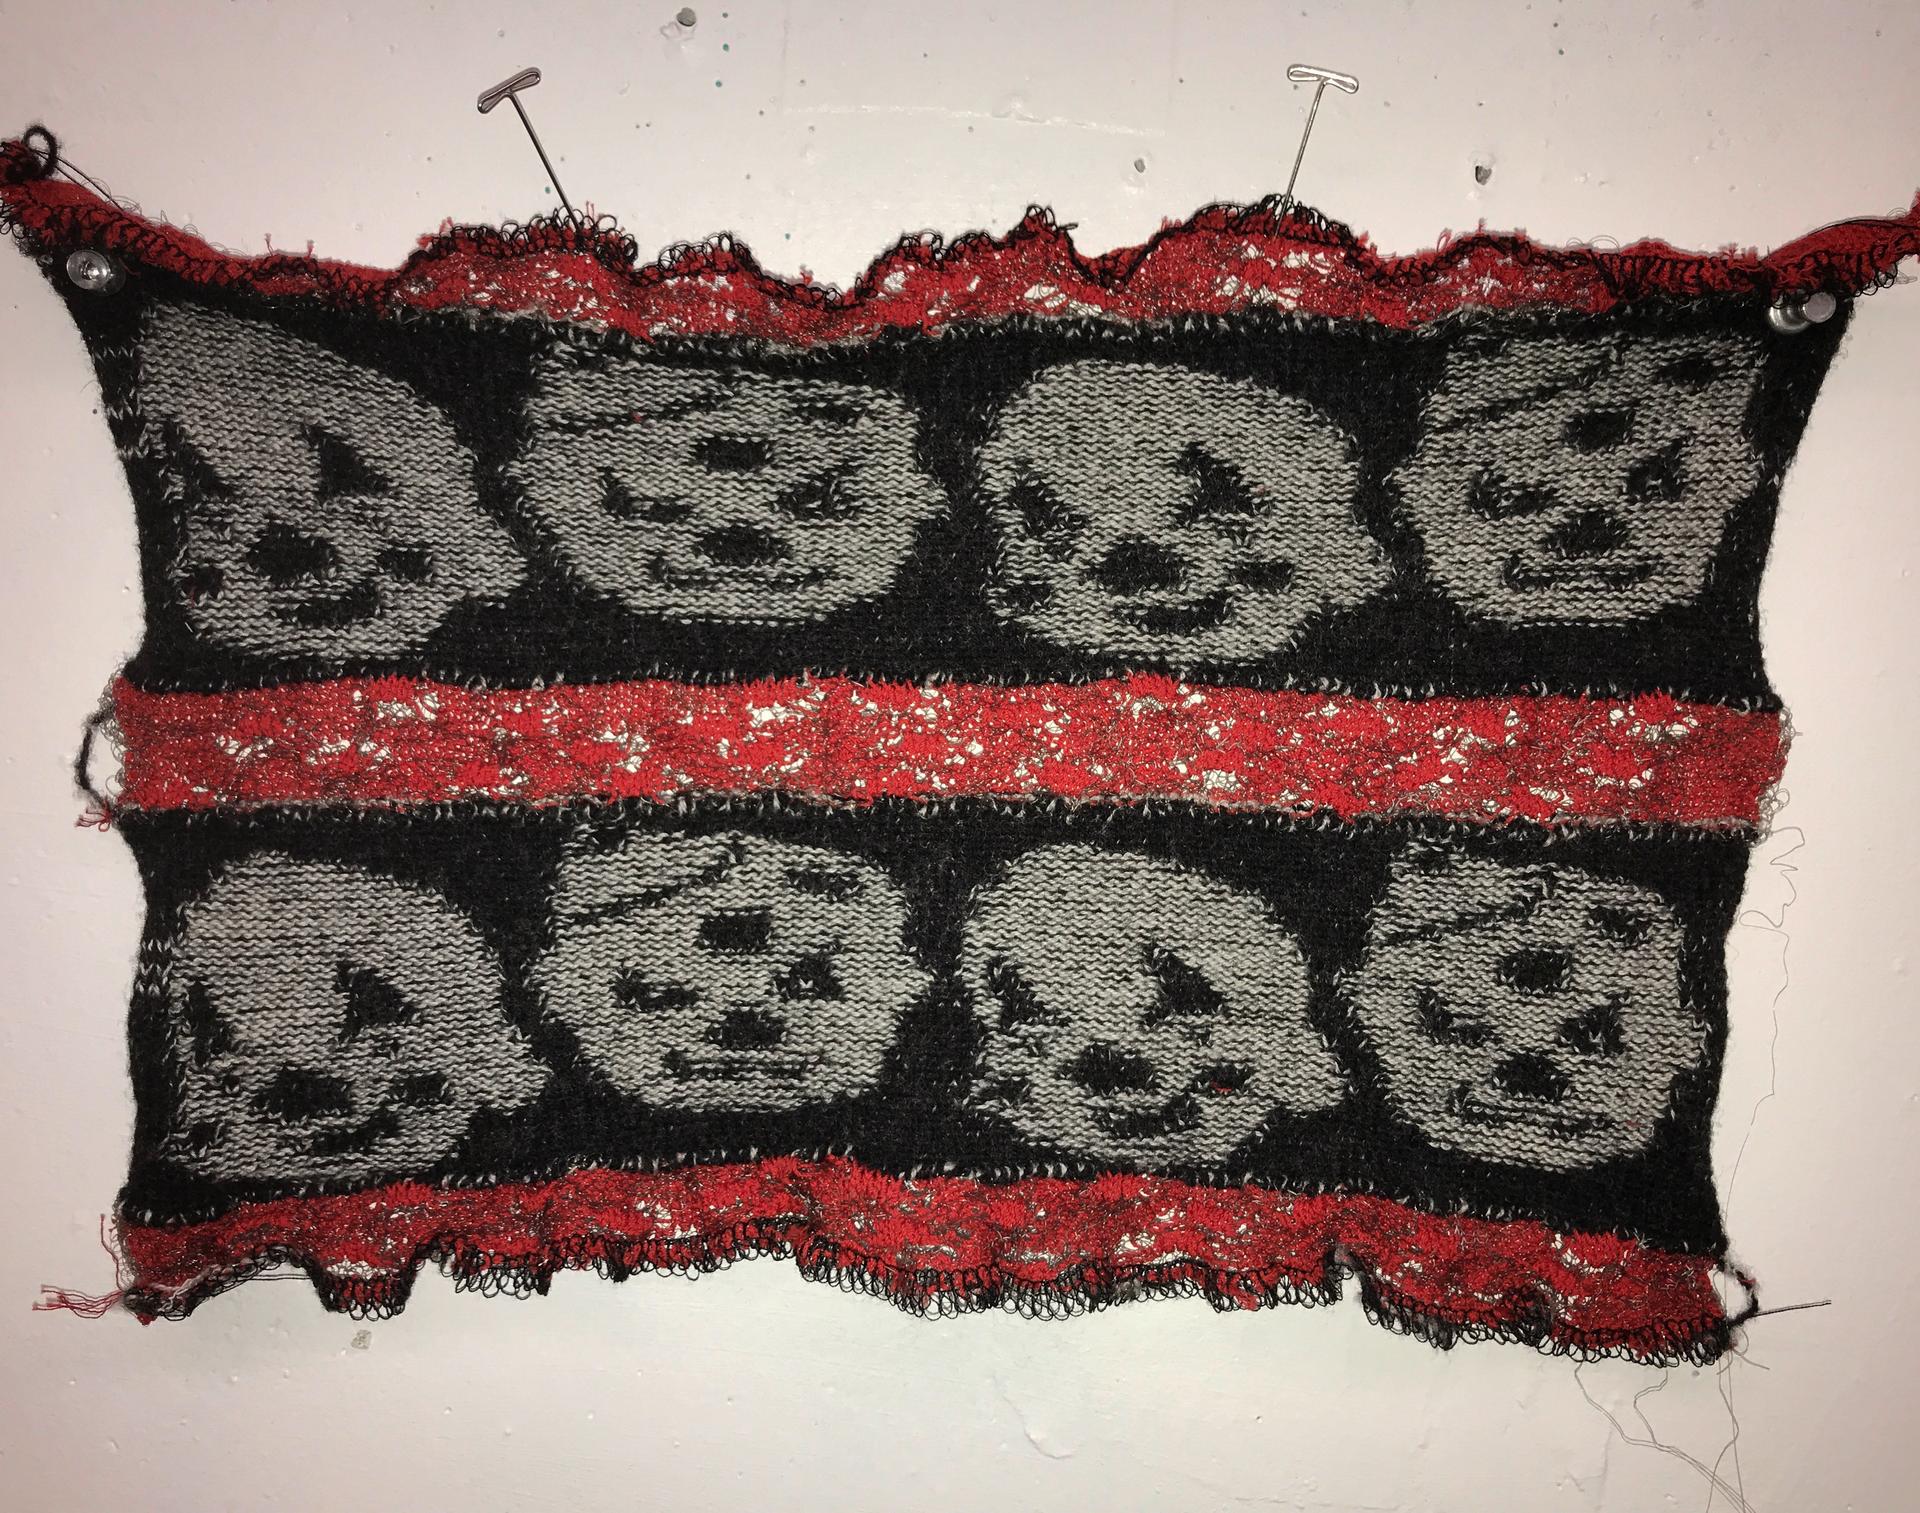 Machine knitting by Hannah Thalmann